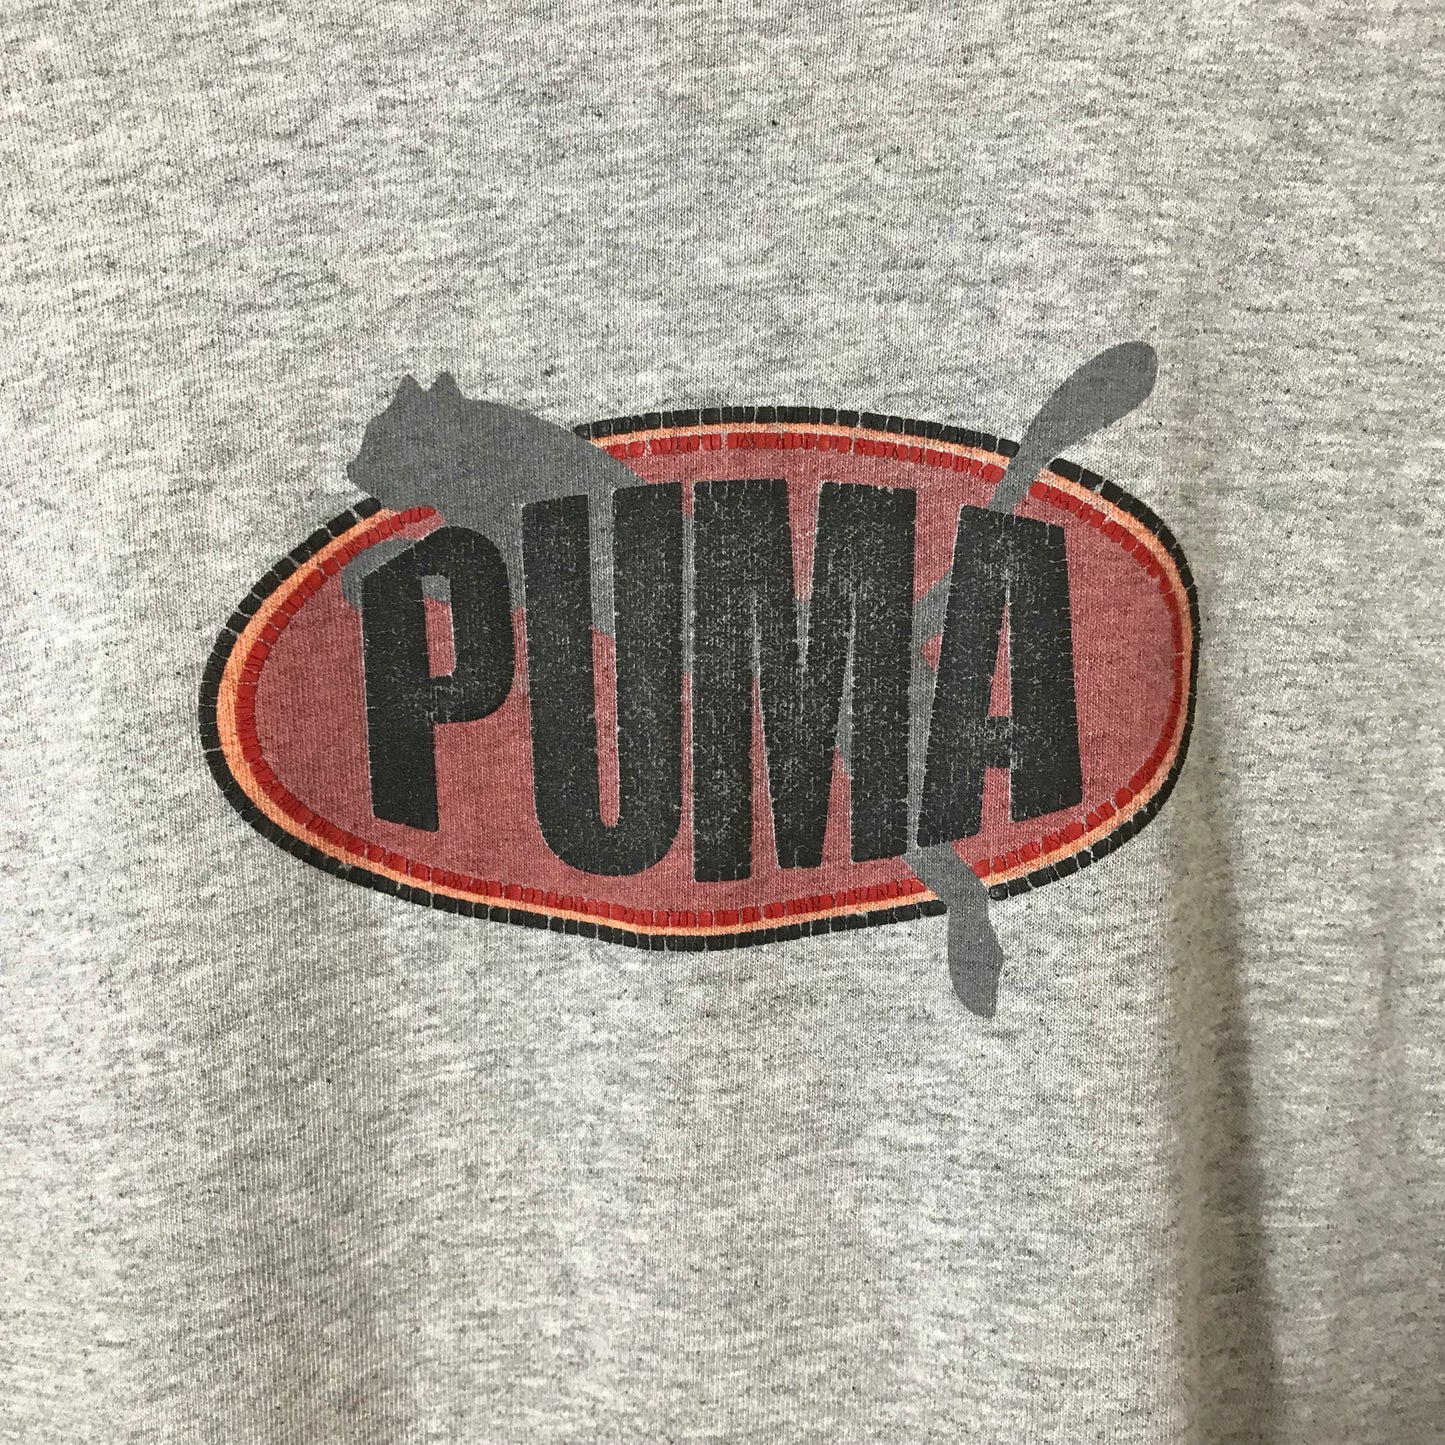 Vintage Puma T-shirt